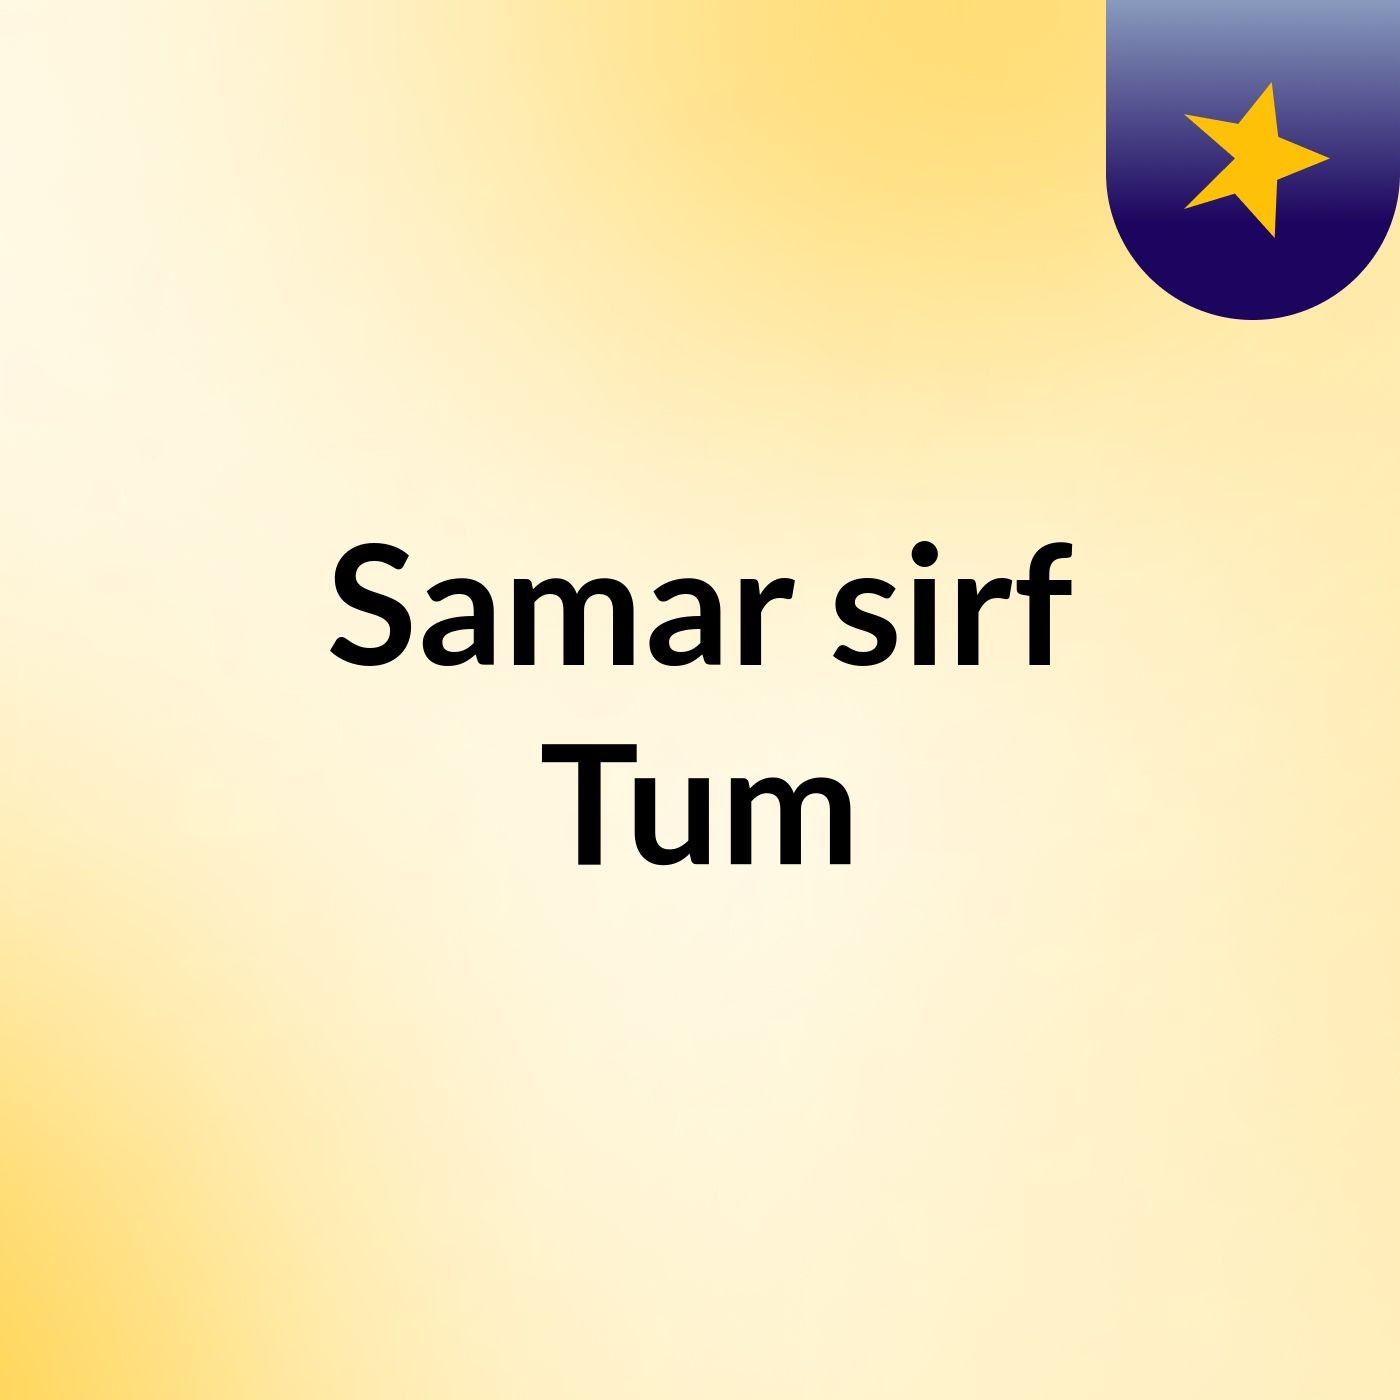 Episode 81 - Samar sirf Tum